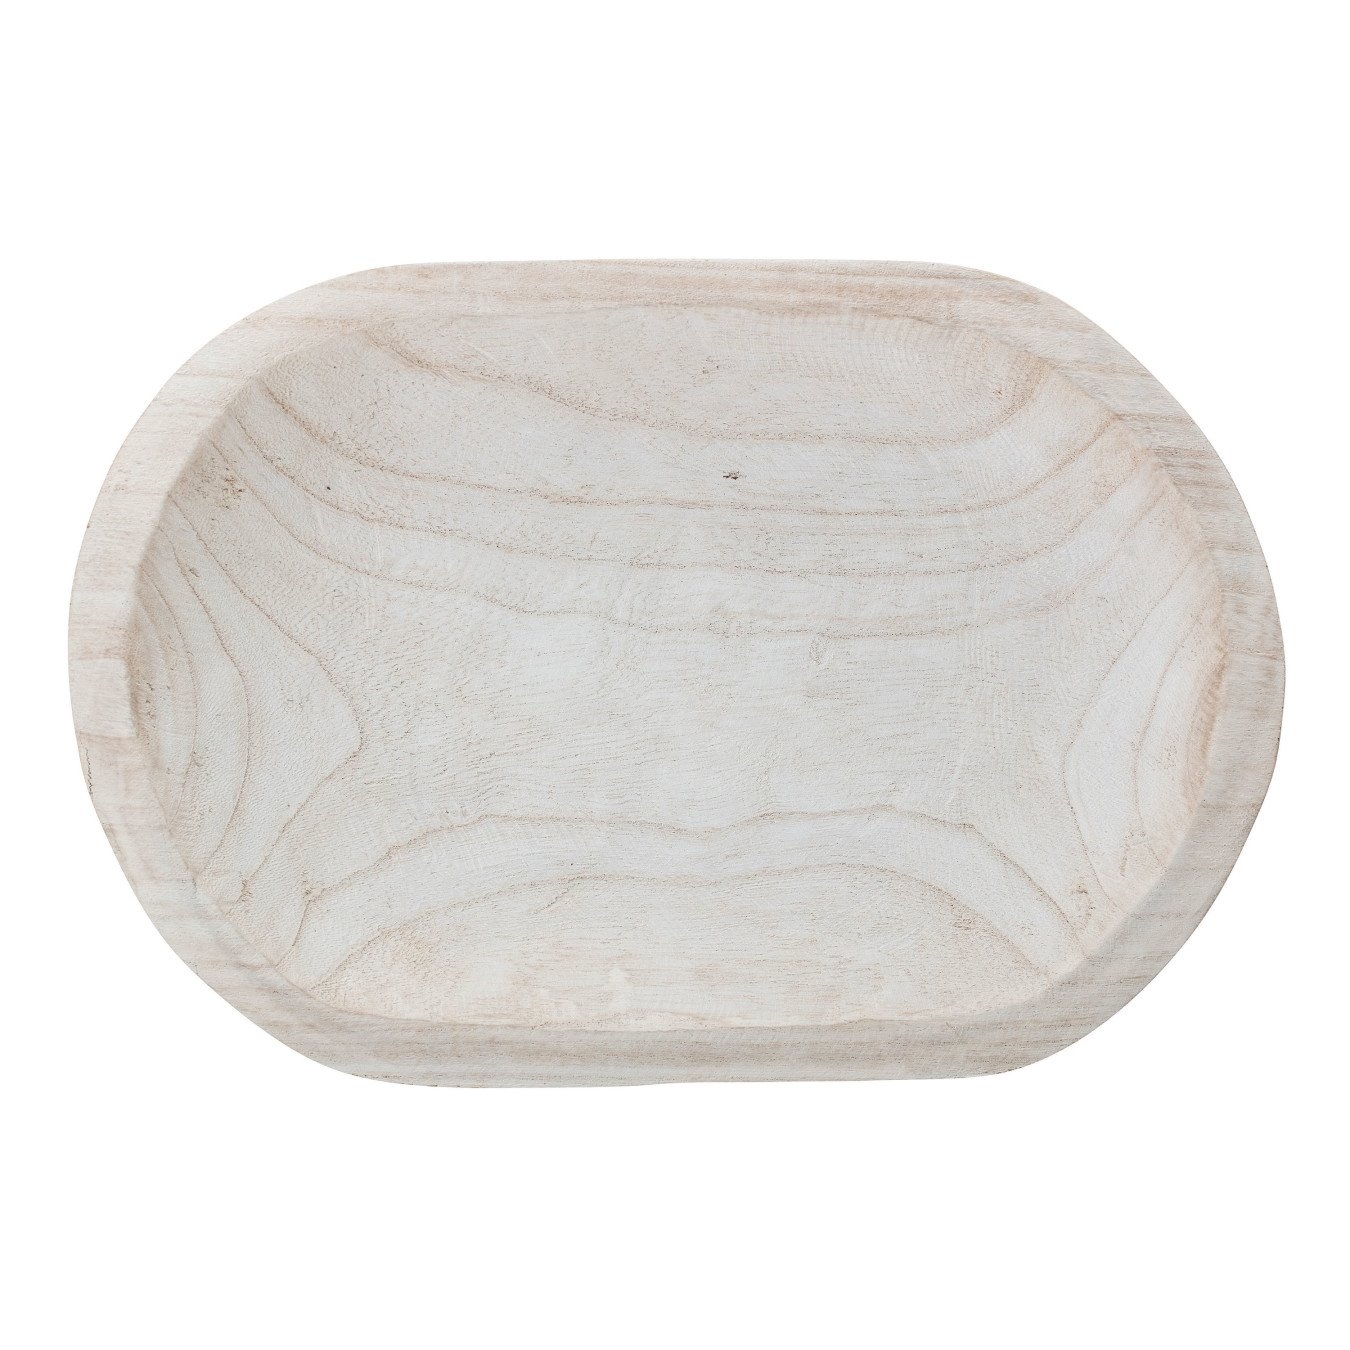 Hand-Carved Paulownia Wood Bowl with Whitewashed Finish - Image 1